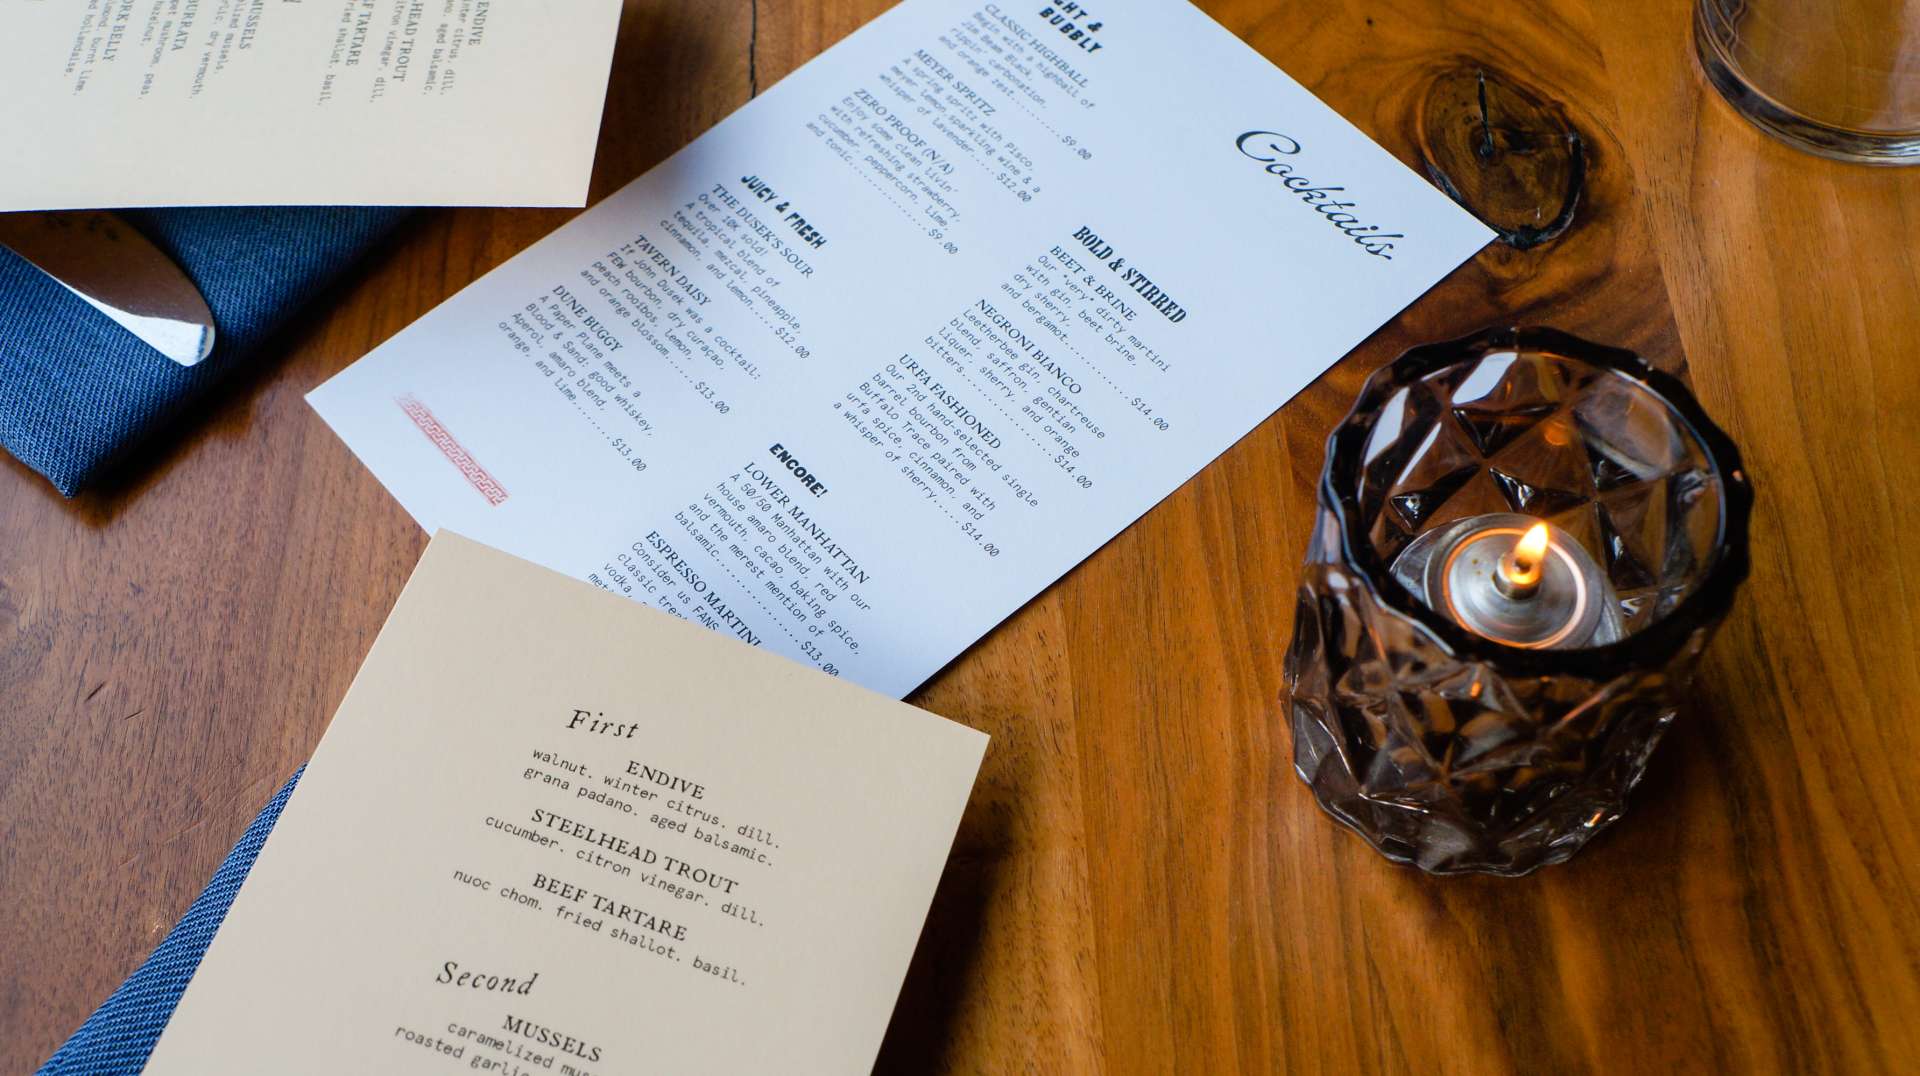 dusek's tavern restaurant review menu image